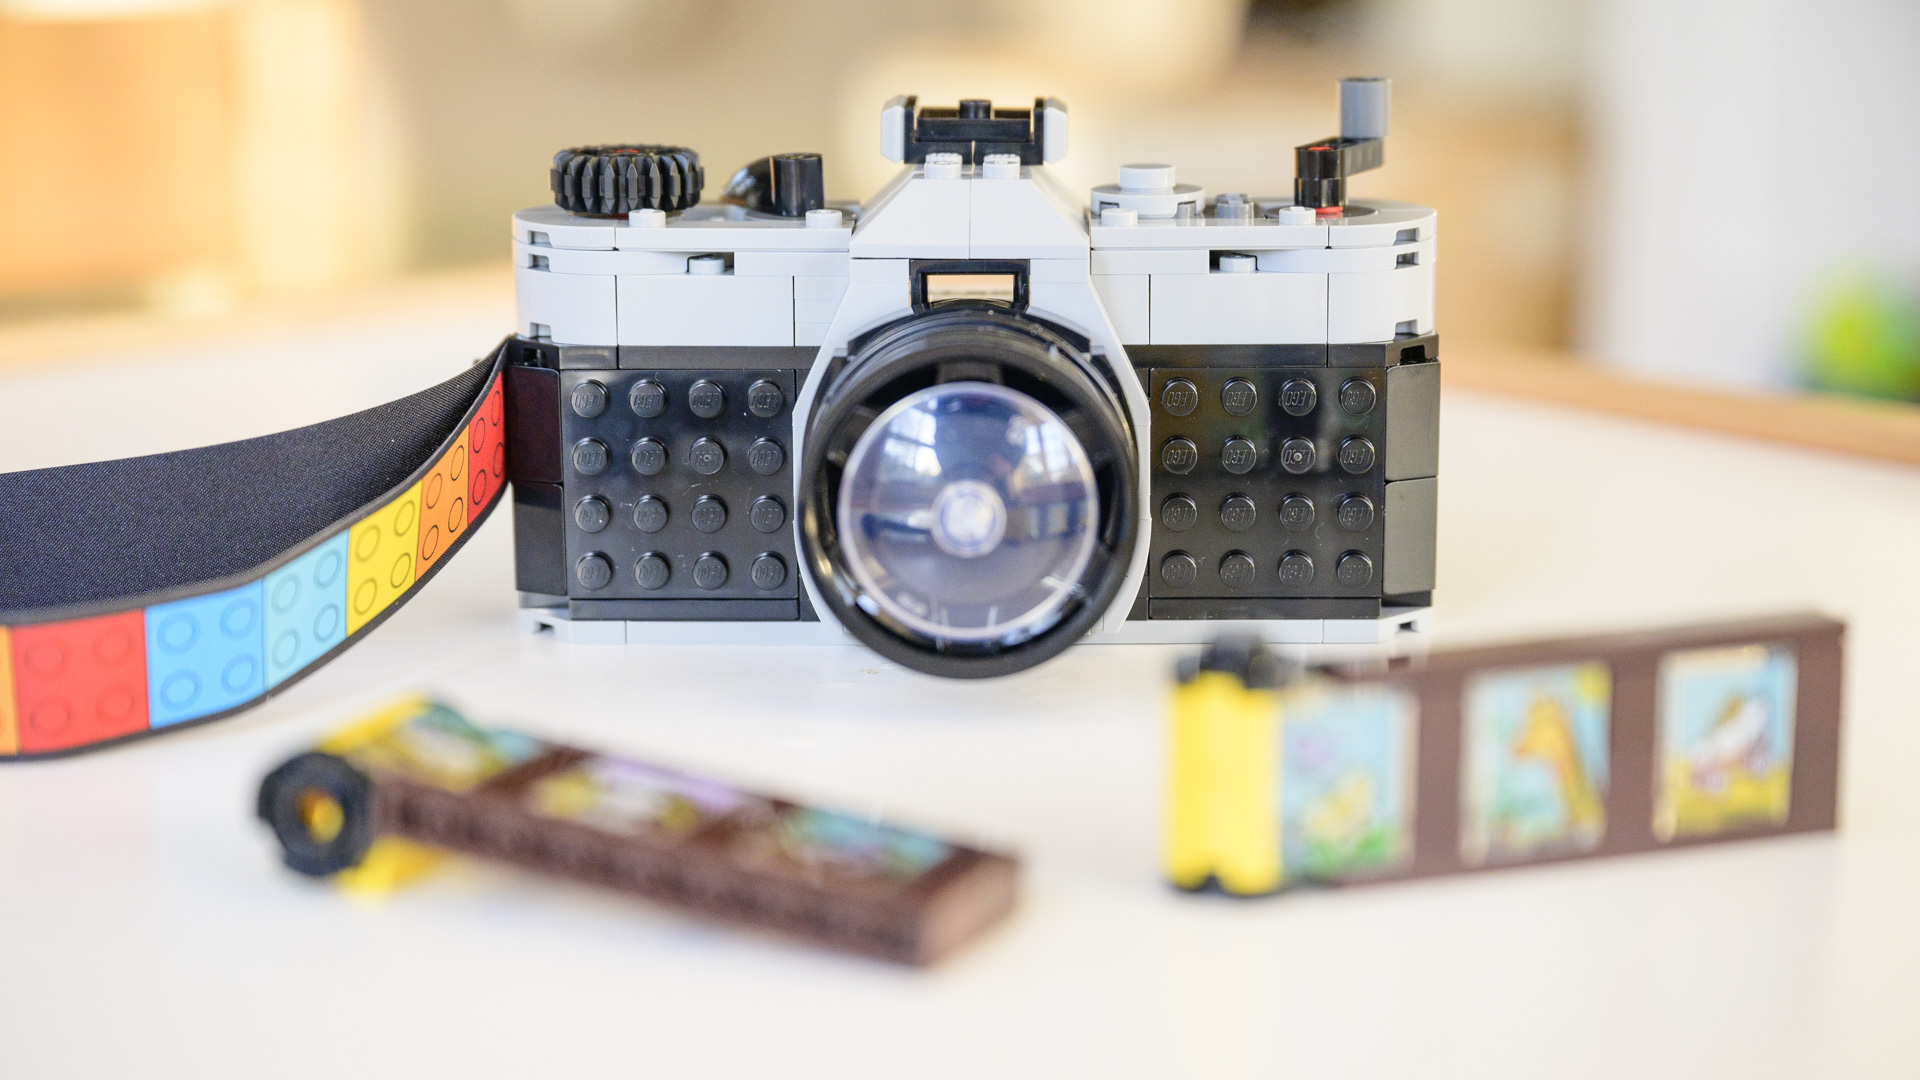 Lego Retro camera complete build on white table